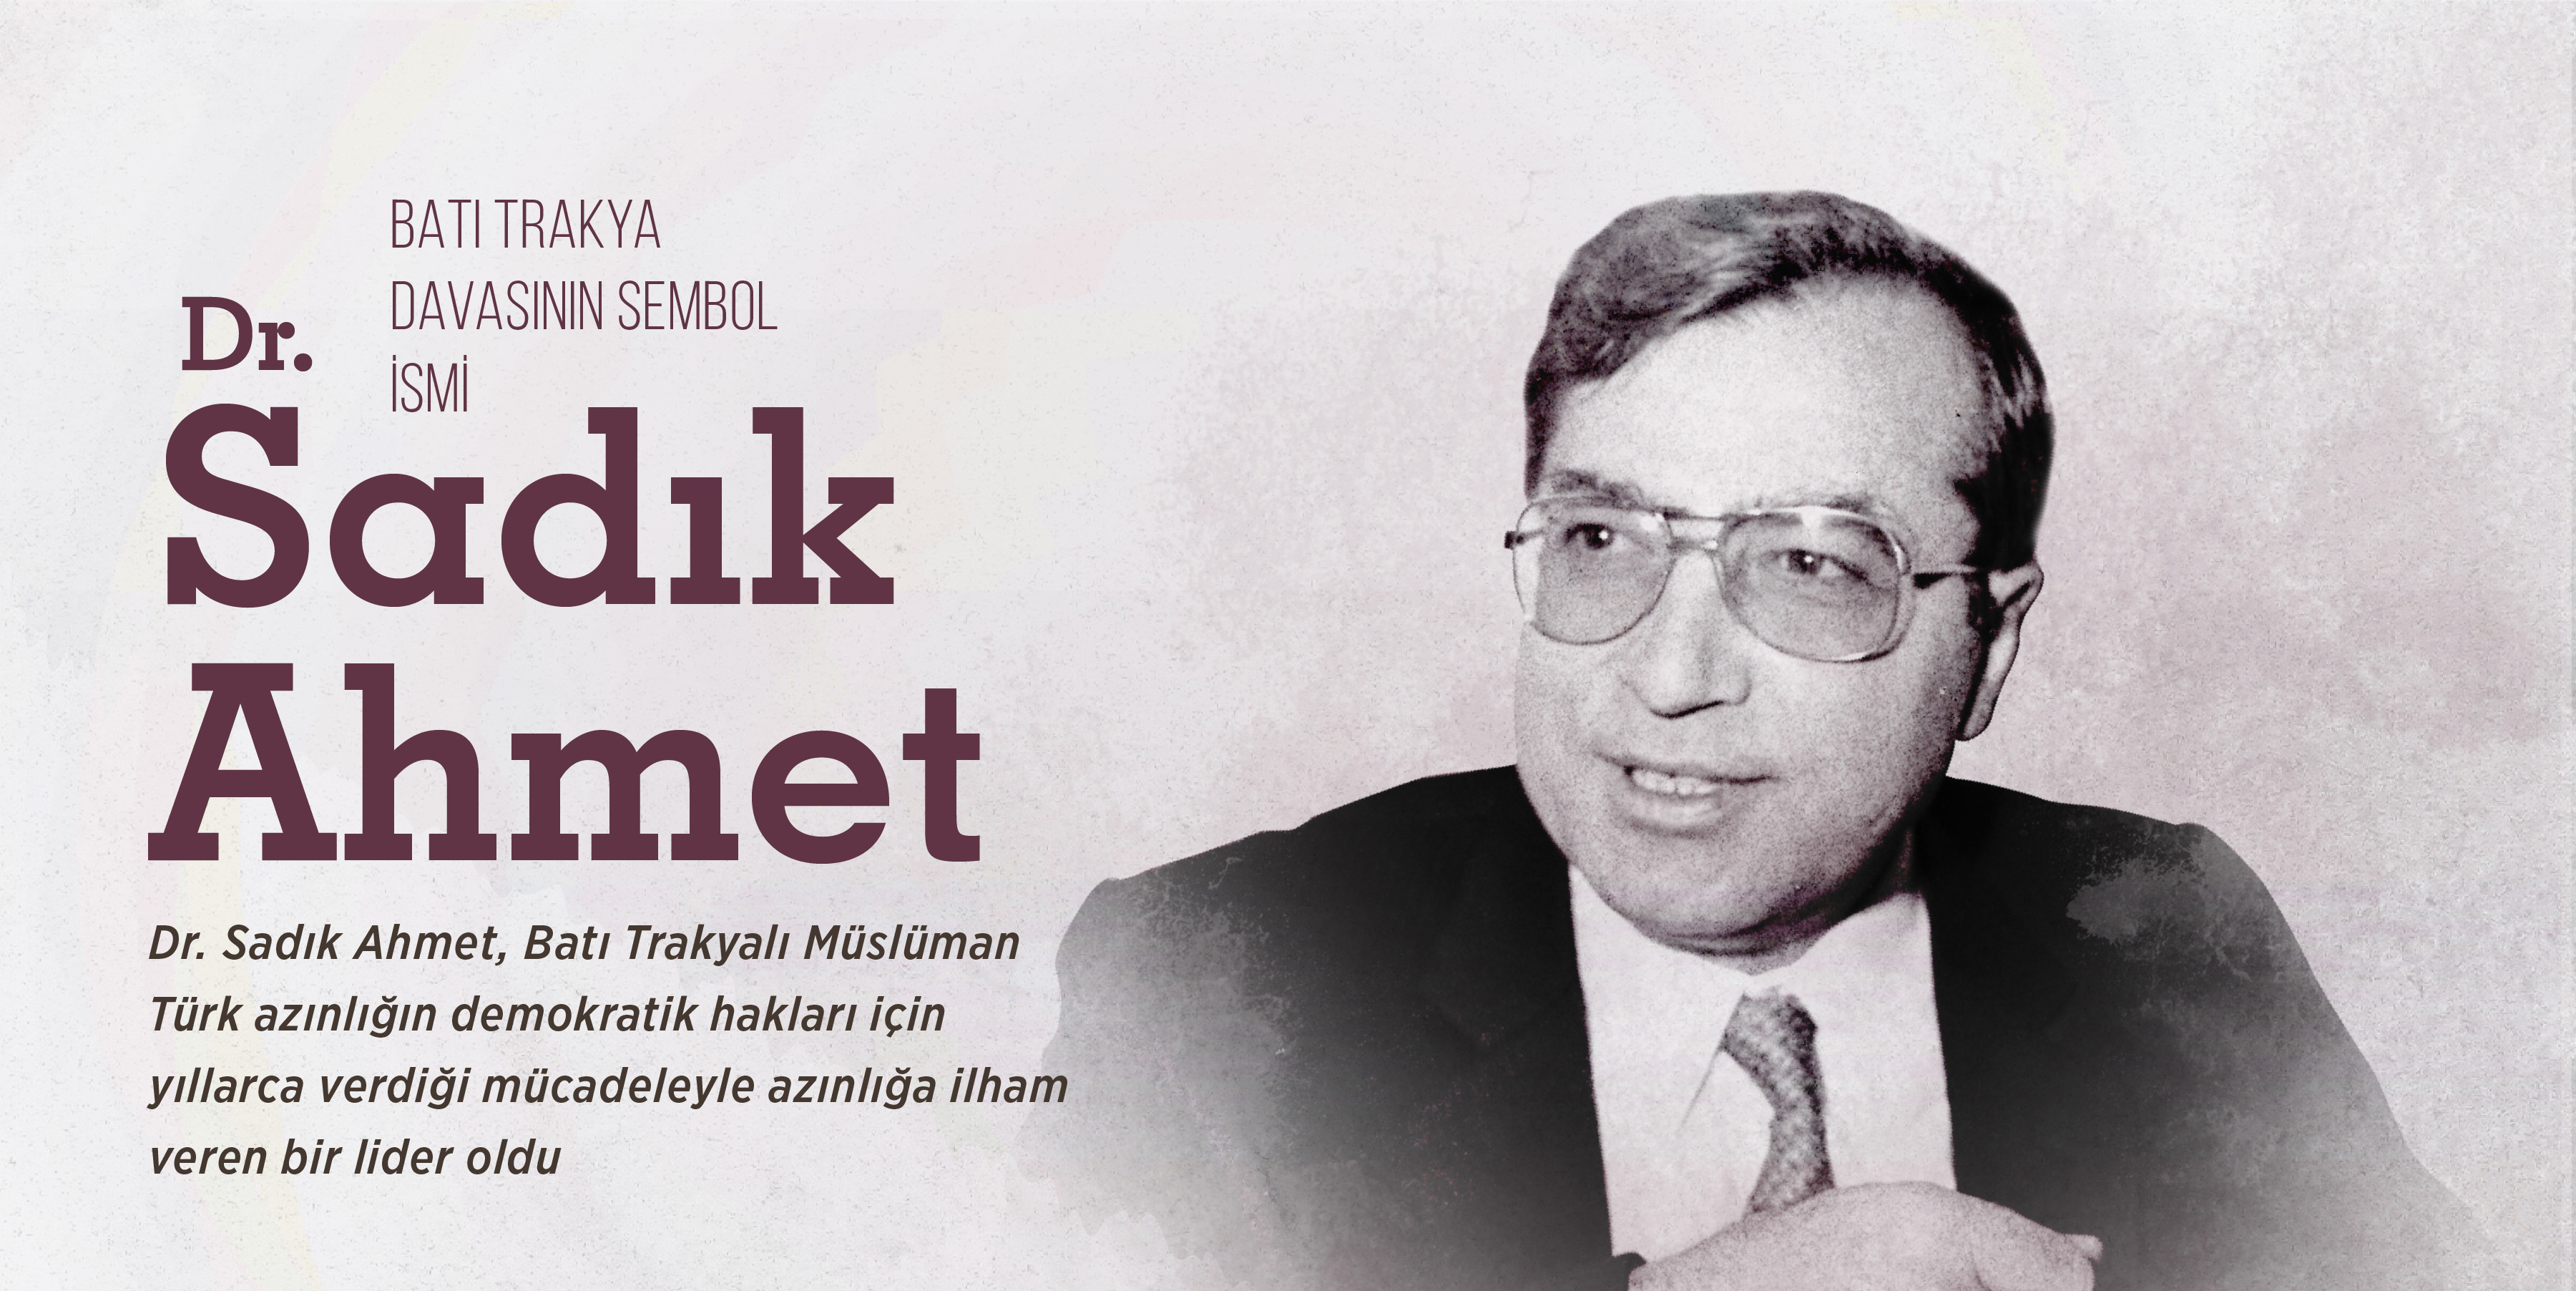 Η συμβολική ονομασία της υπόθεσης της Δυτικής Θράκης: Δρ. Sadik Ahmet